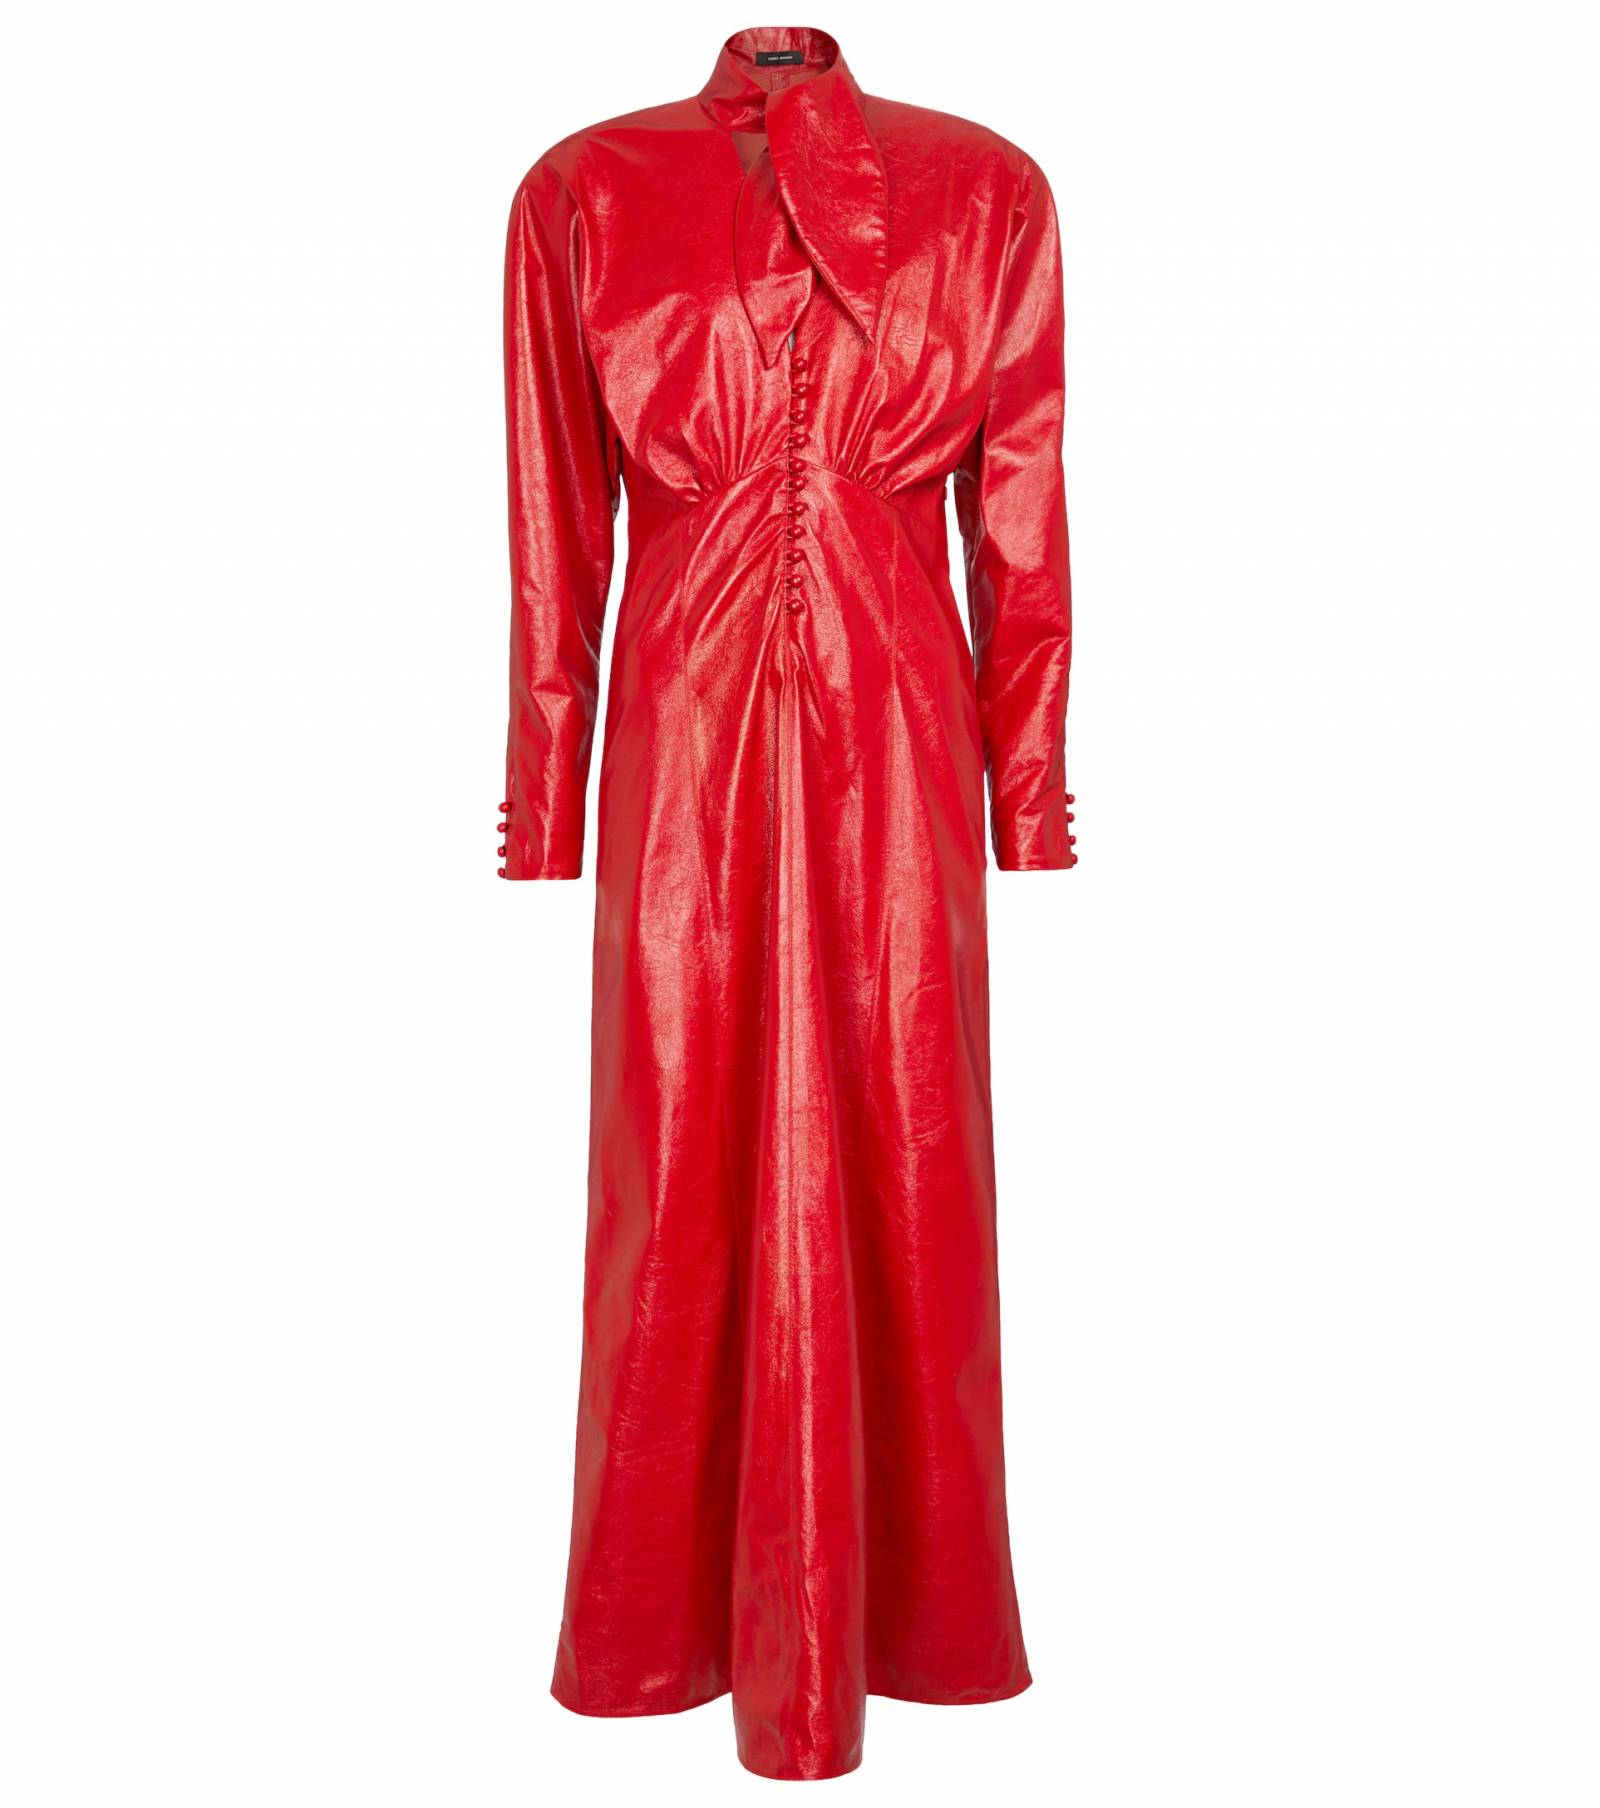 Sukienka Isabel Marant, ok. 4800 zł (Fot. materiały prasowe)